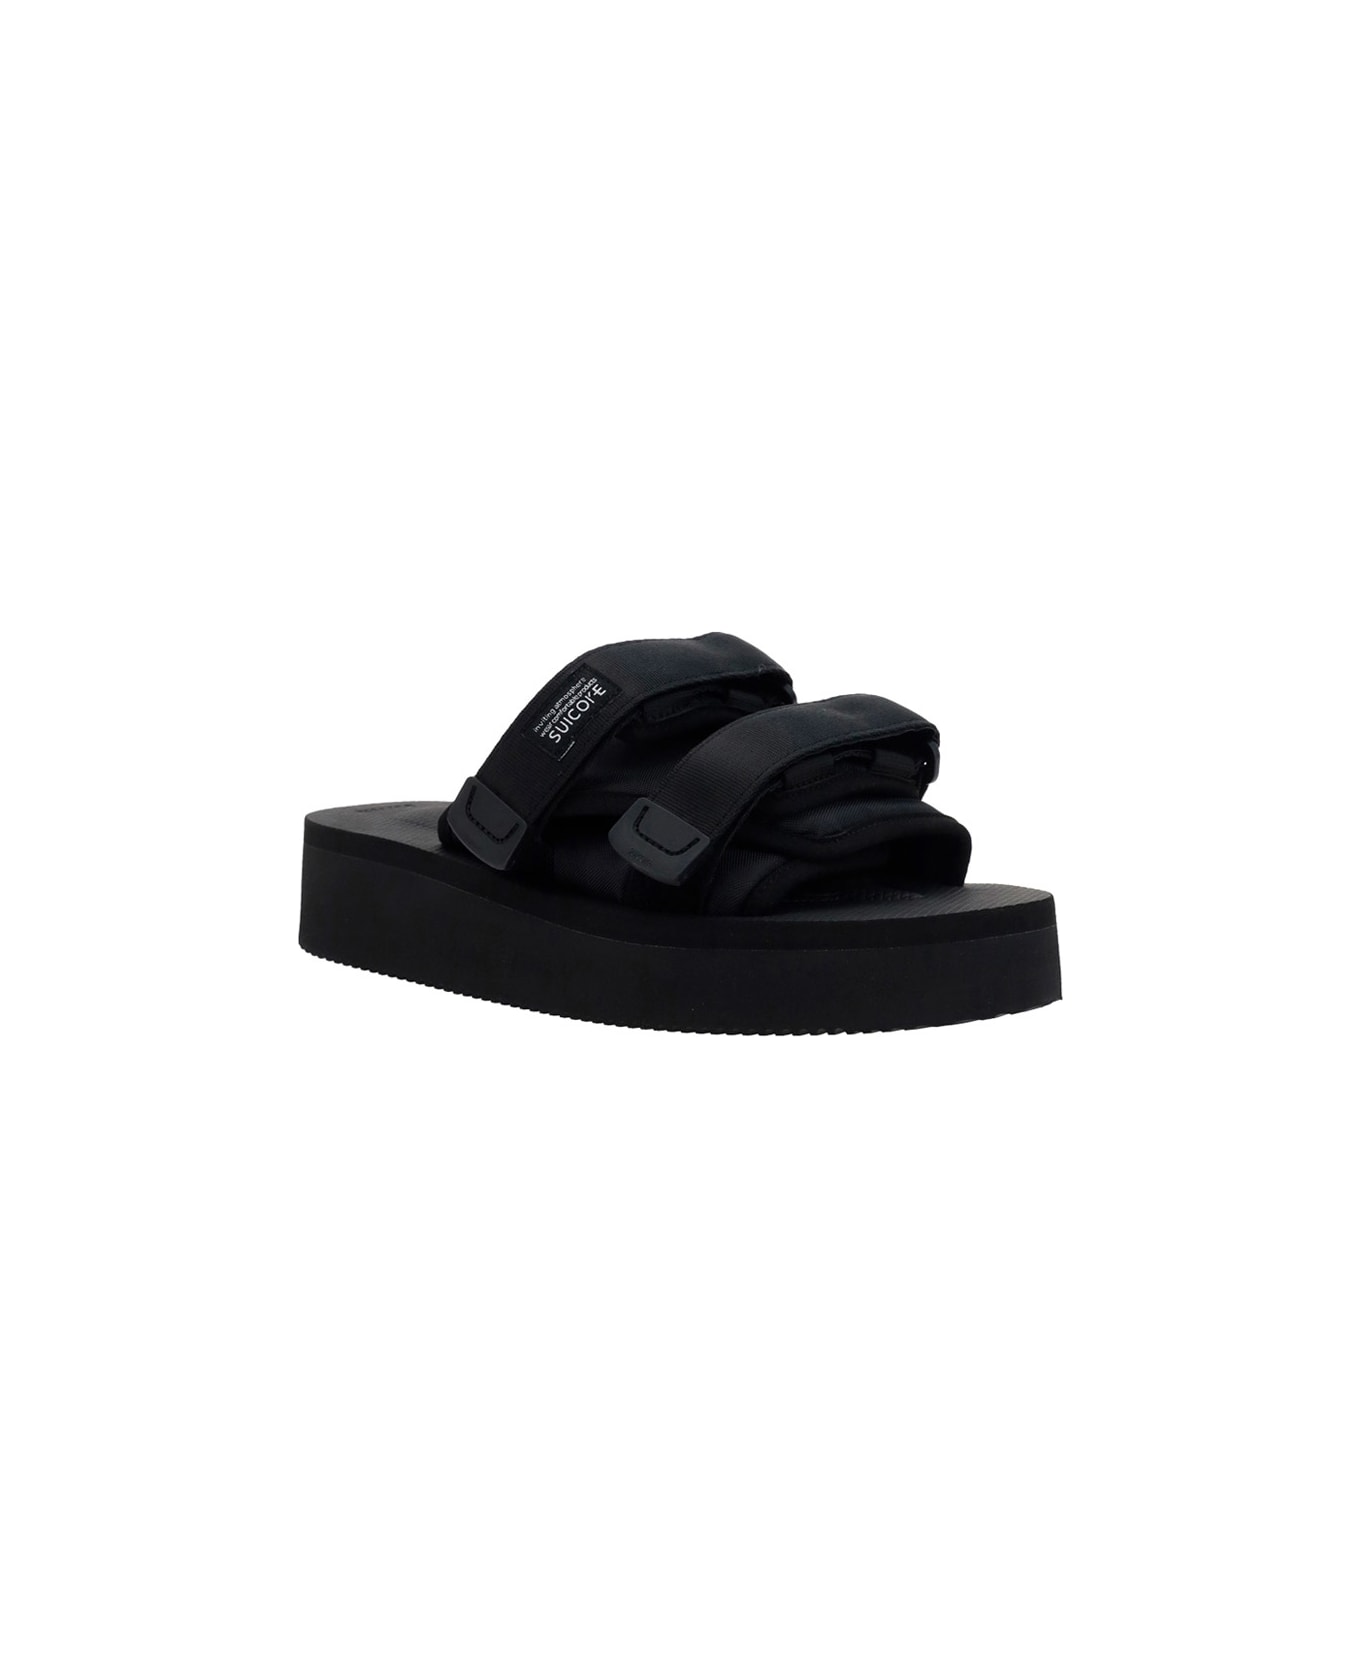 SUICOKE Moto-po Sandals - Black